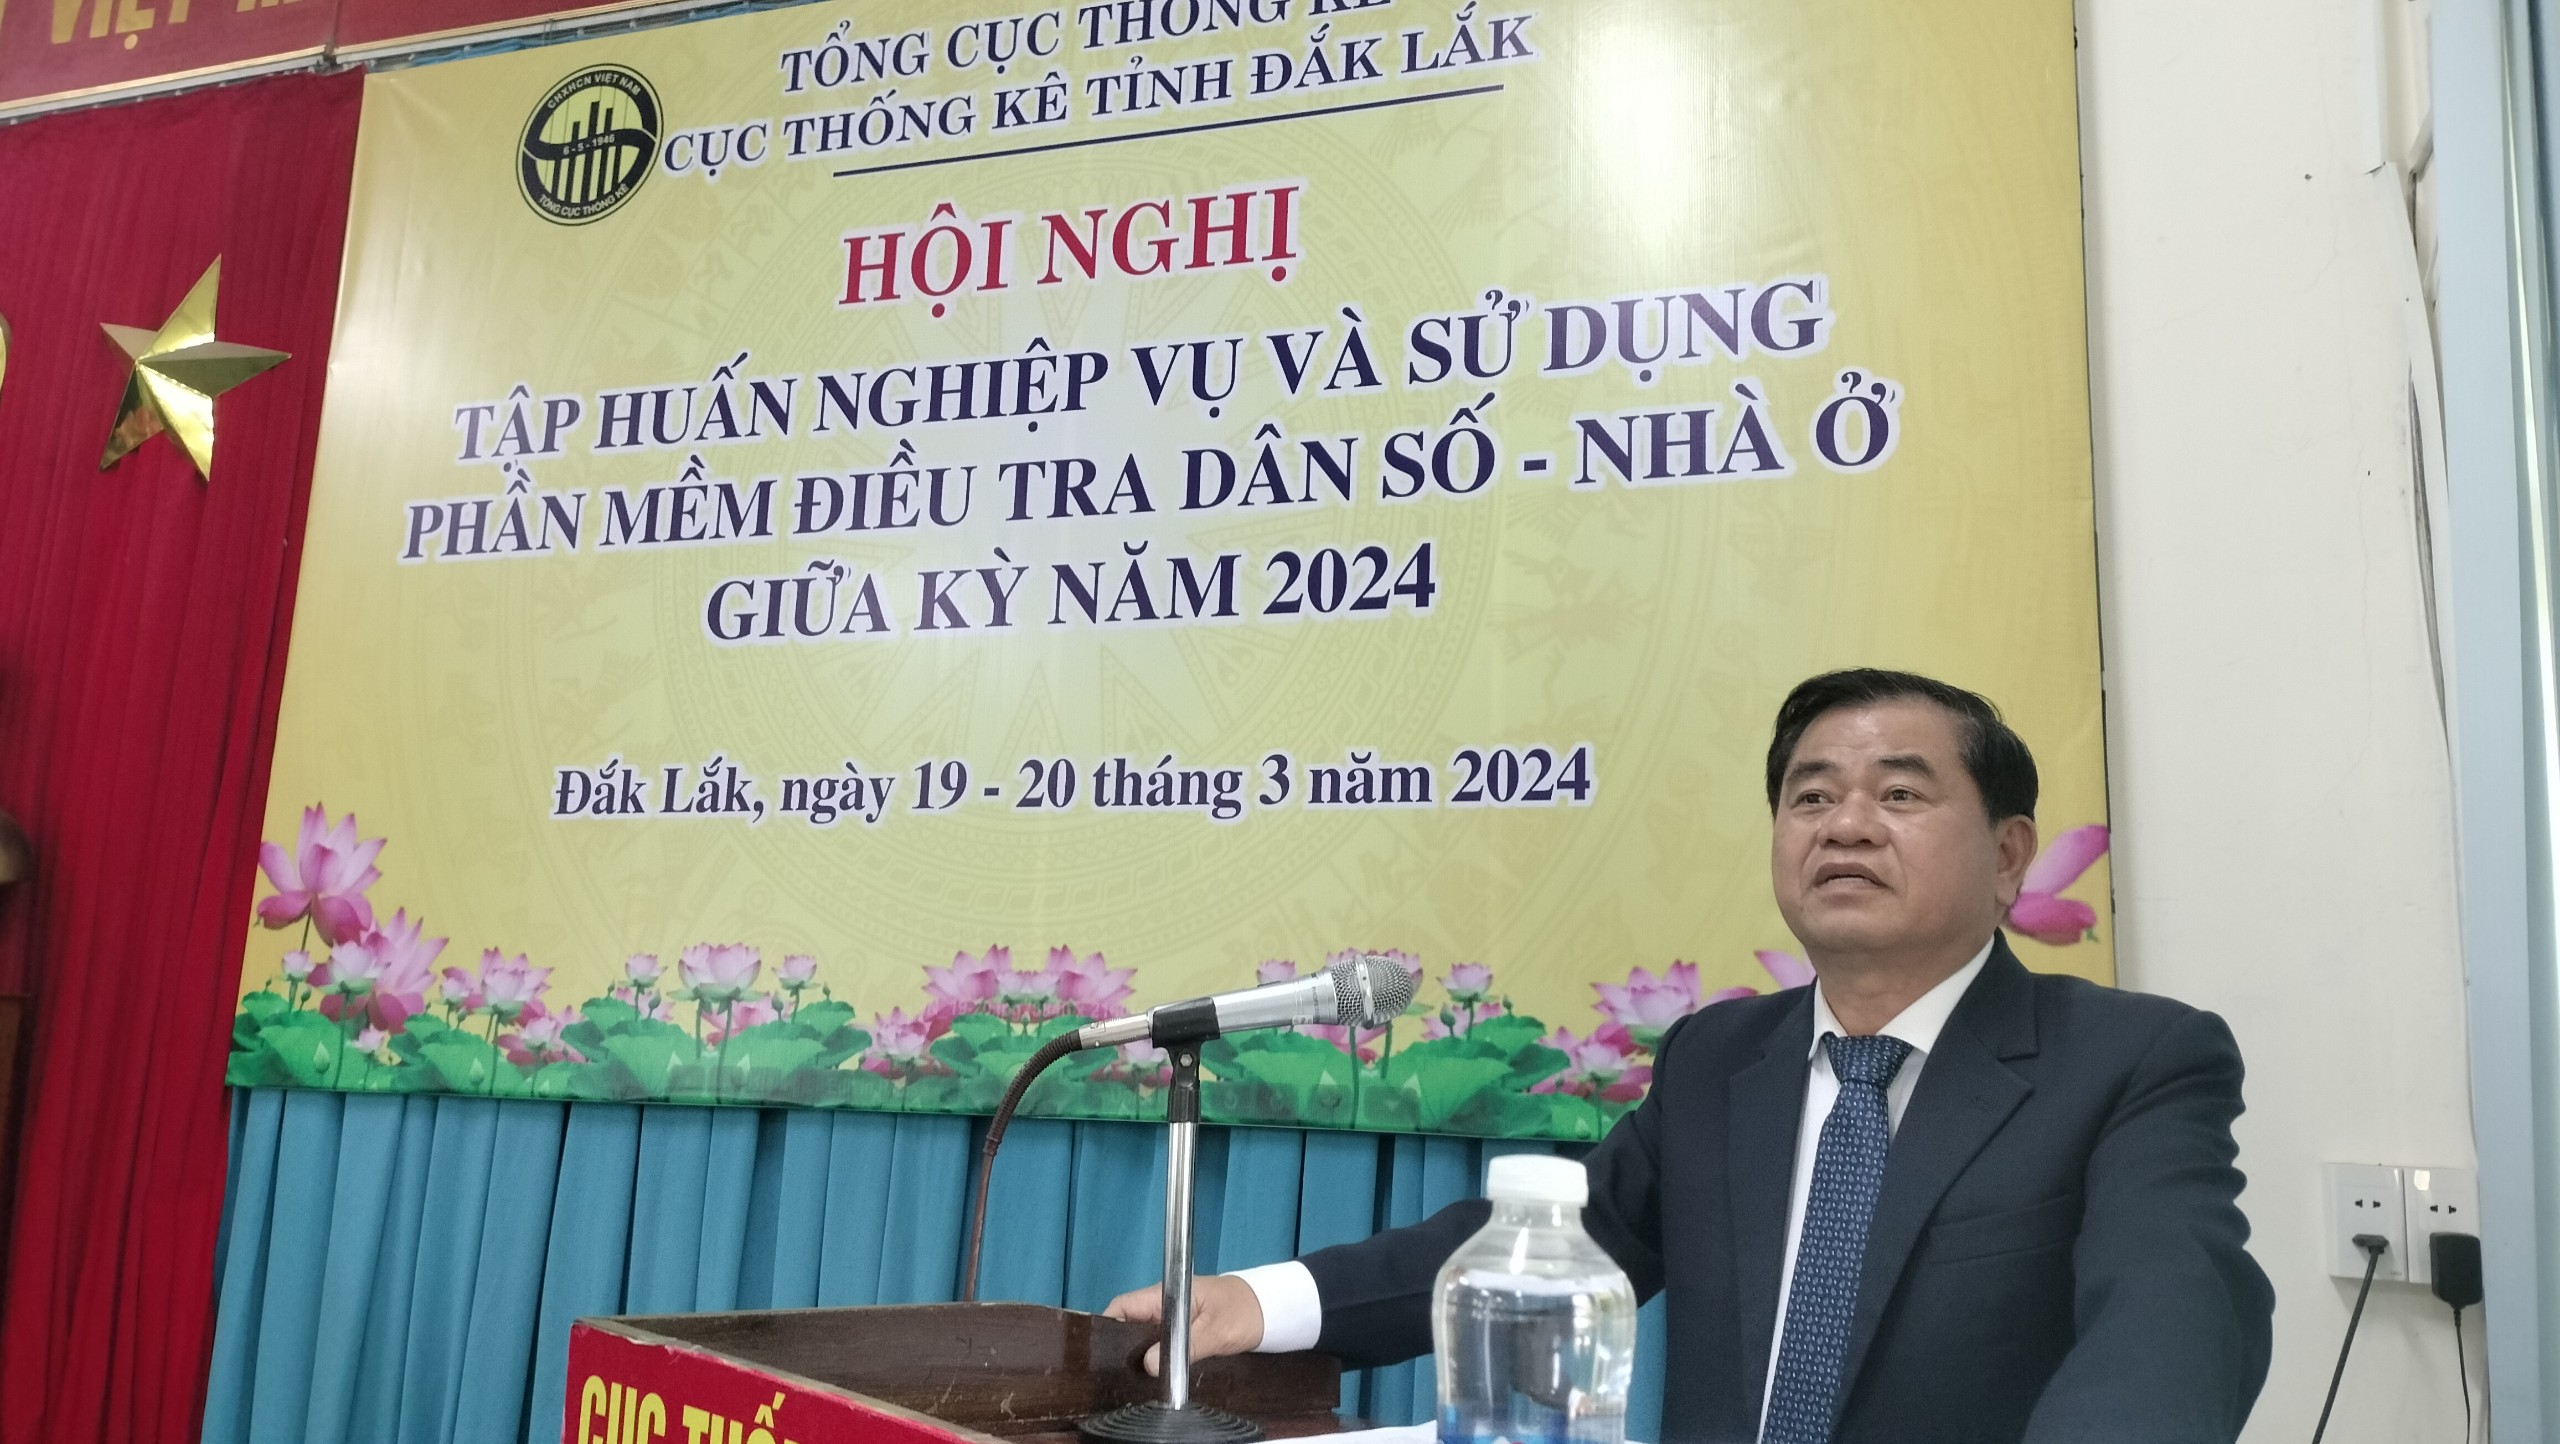 Cục Thống kê tỉnh Đắk Lắk tập huấn điều tra dân số và nhà ở giữa kỳ năm 2024